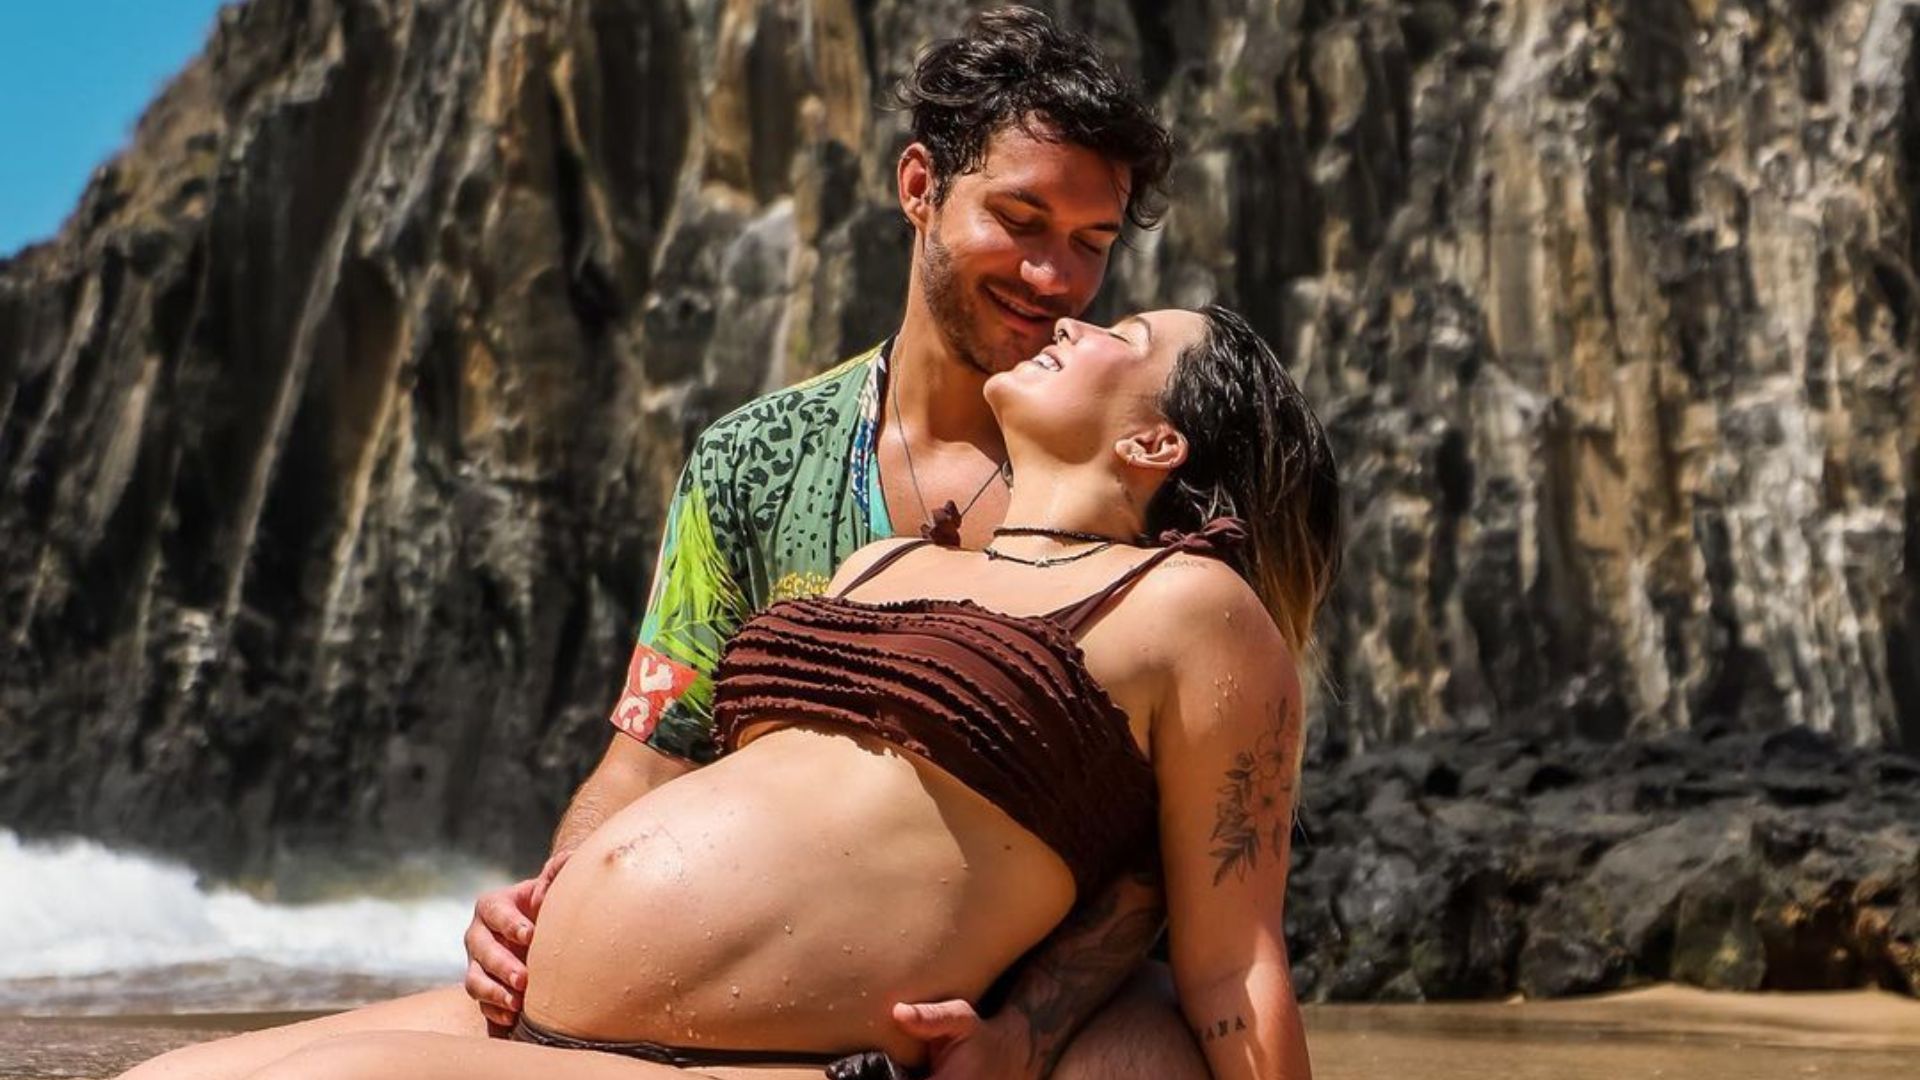 Eliezer e Viih Tube esperam primeira filha - Foto: Reprodução/Instagram @eliezer